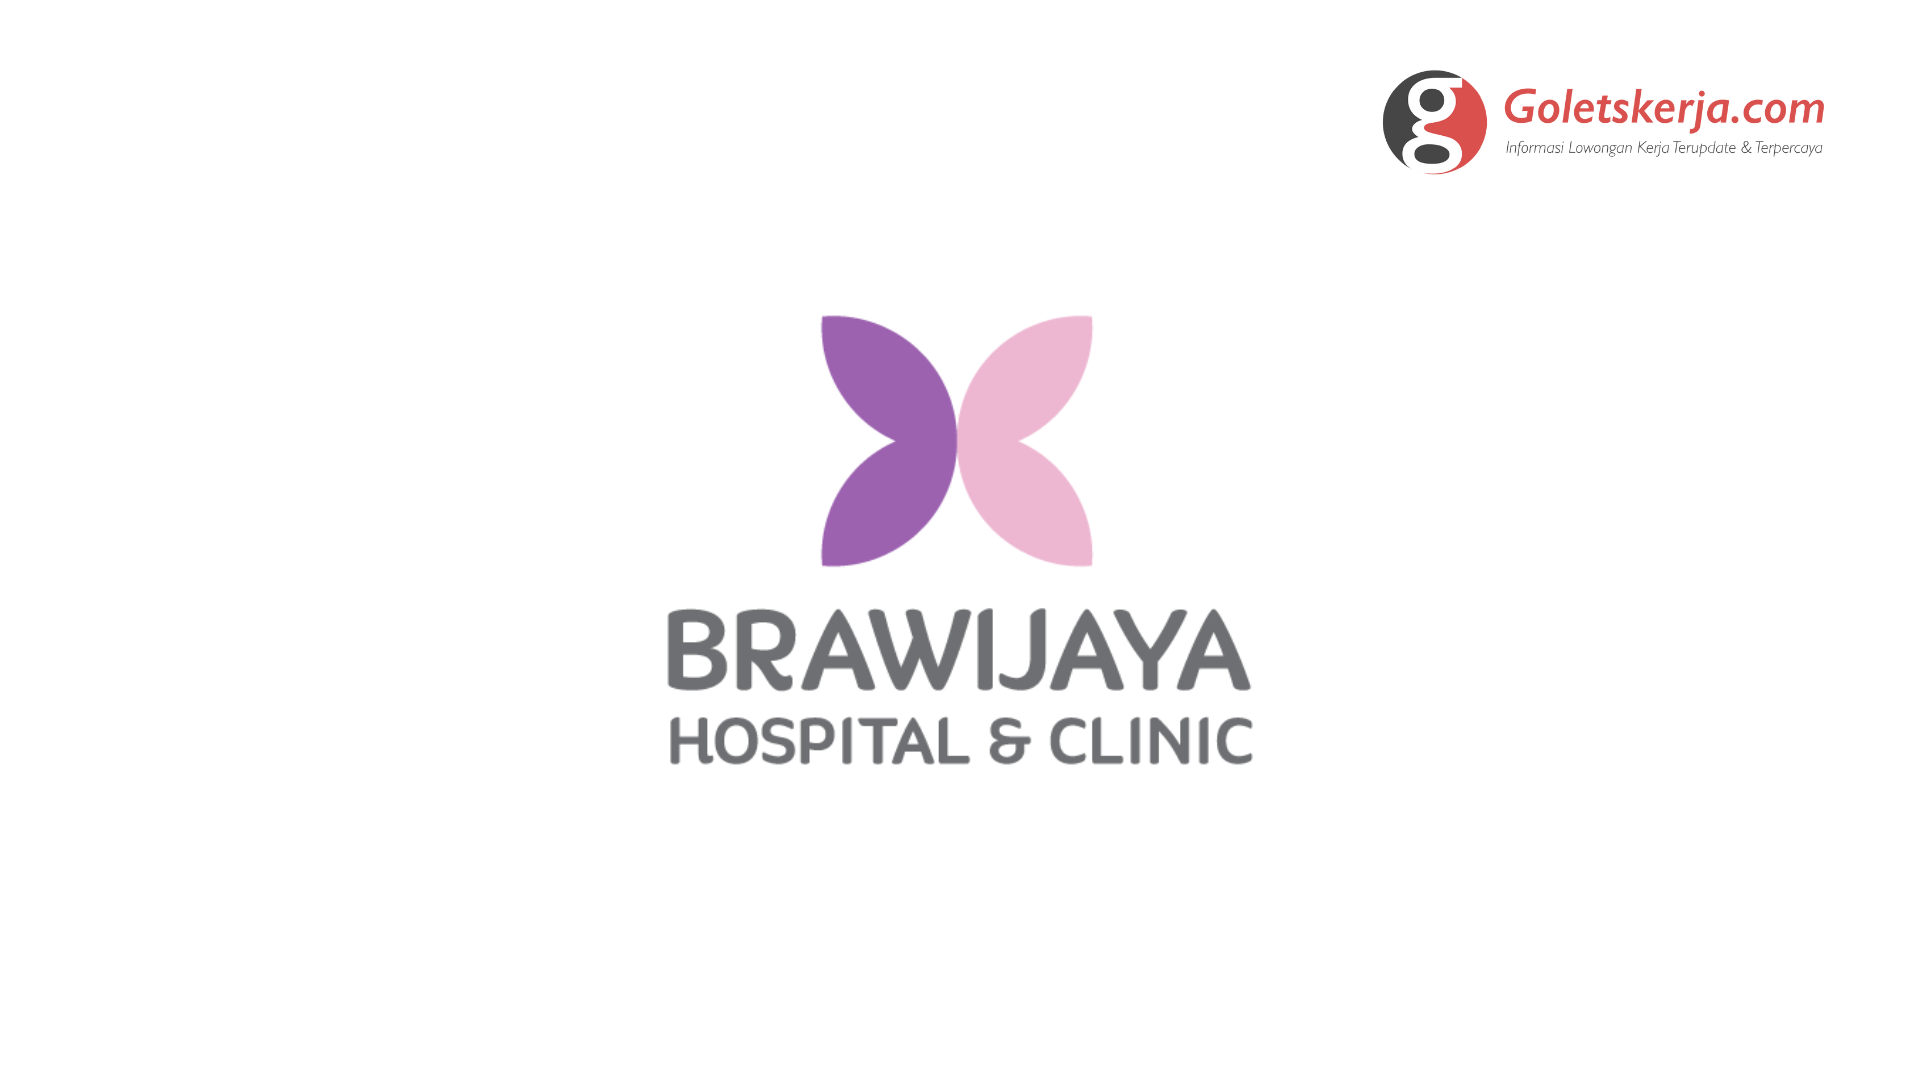 Lowongan Kerja Brawijaya Hospital & Clinic